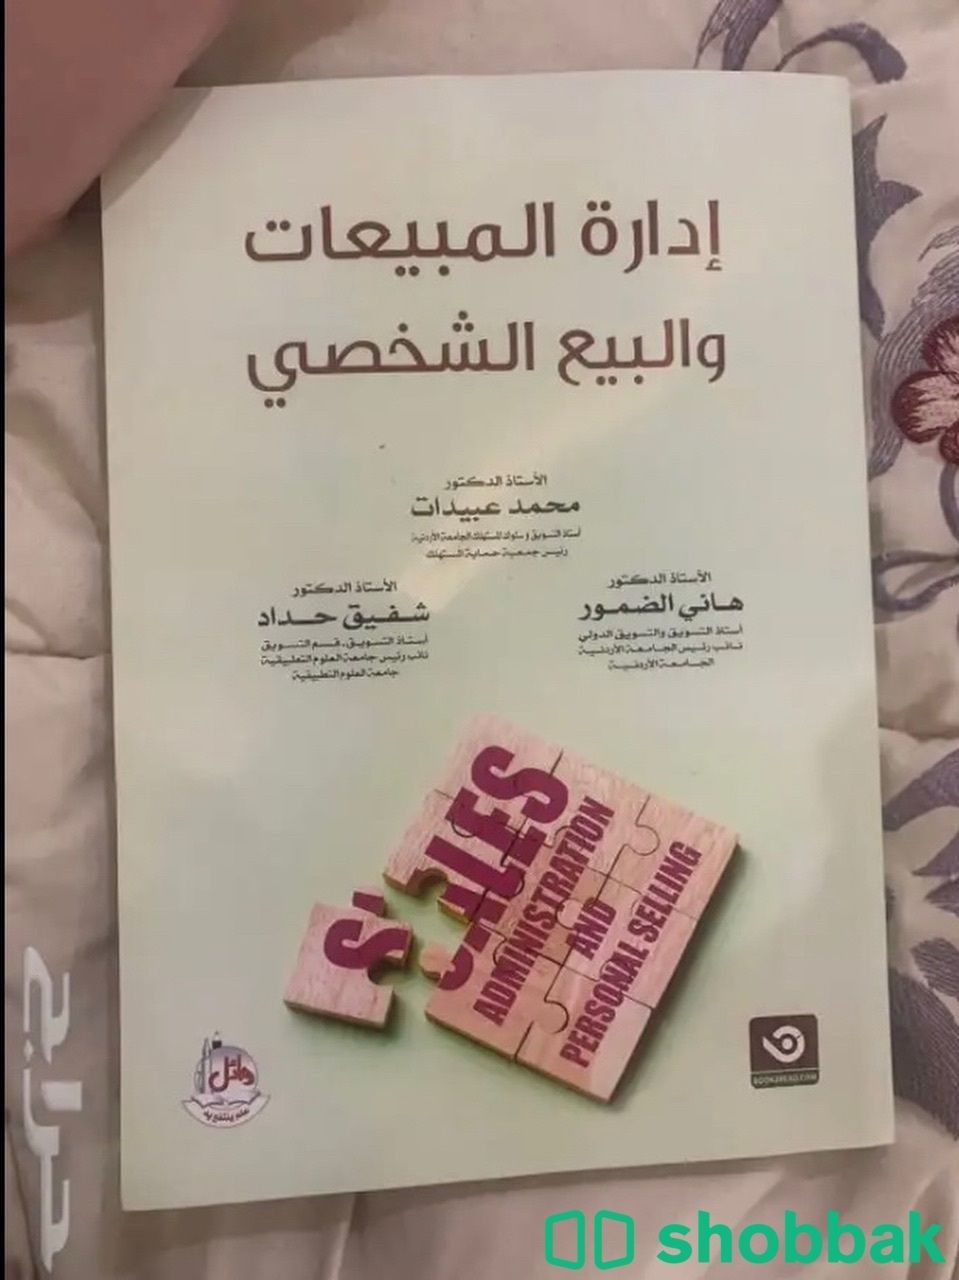 كتاب ادارة الاعمال الدولية و كتاب السلوك التنظيمي  شباك السعودية